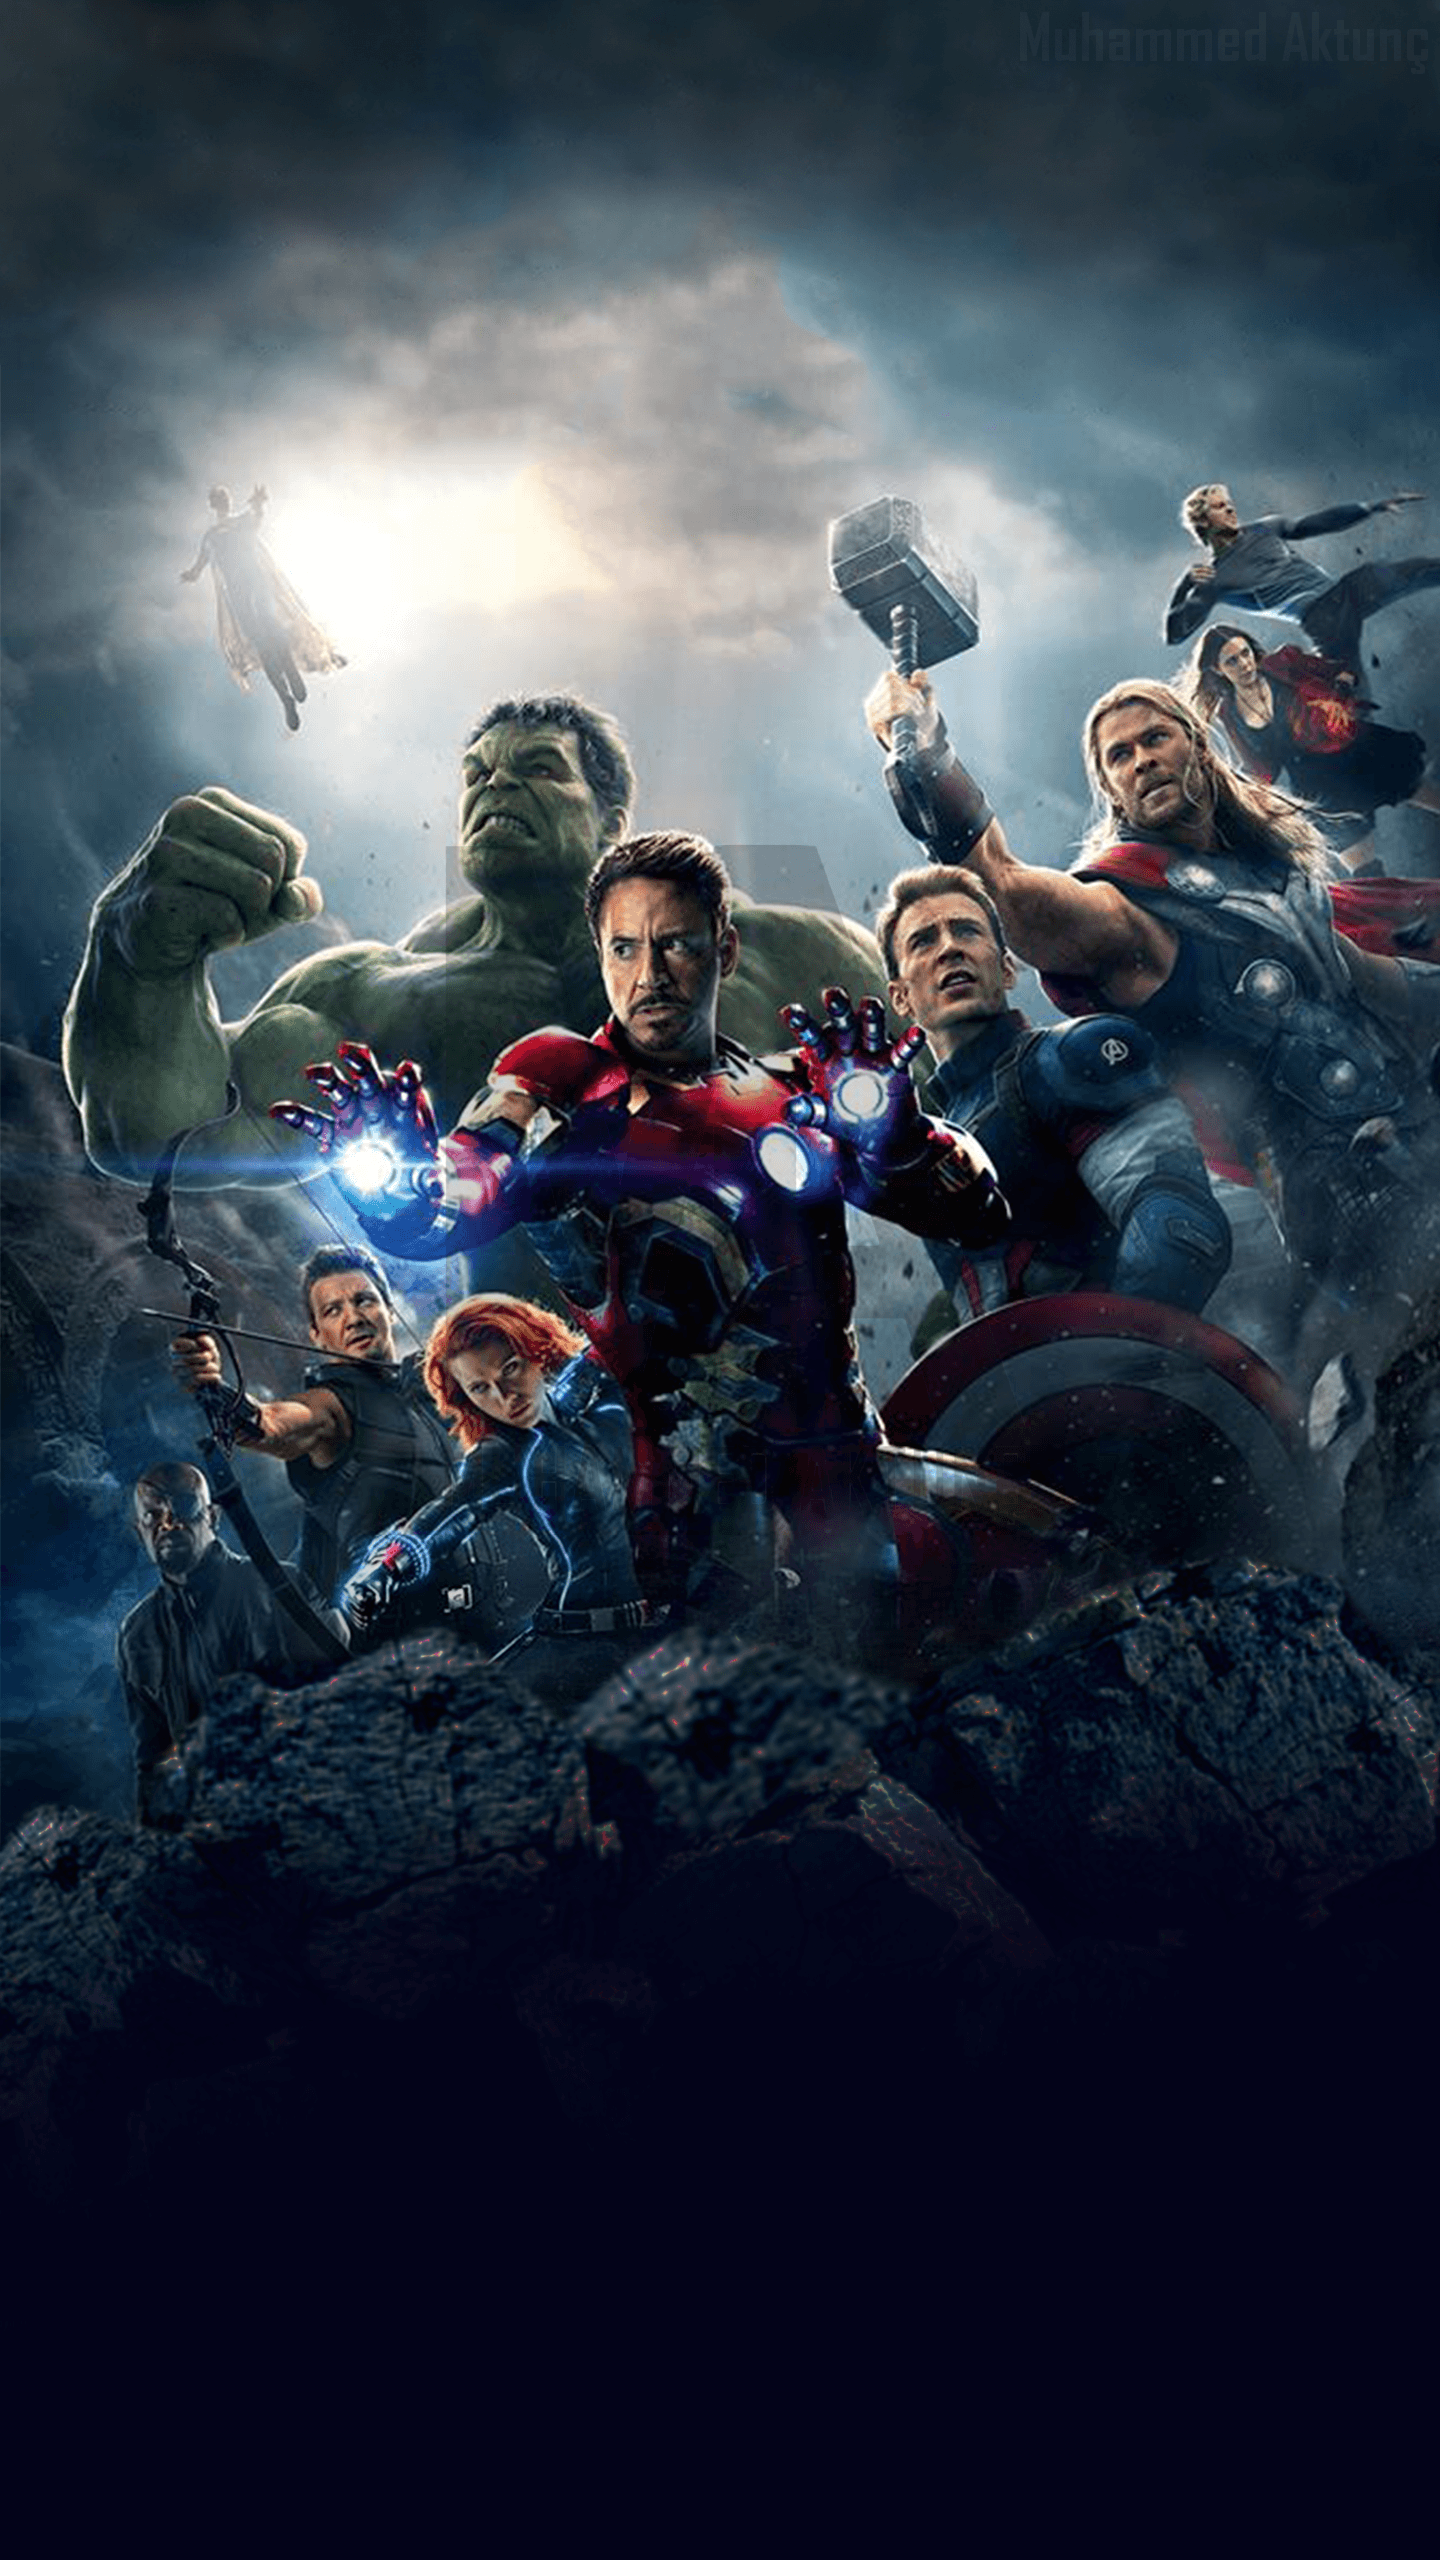 MARVEL's Avengers: Age of Ultron Wallpaper for G3